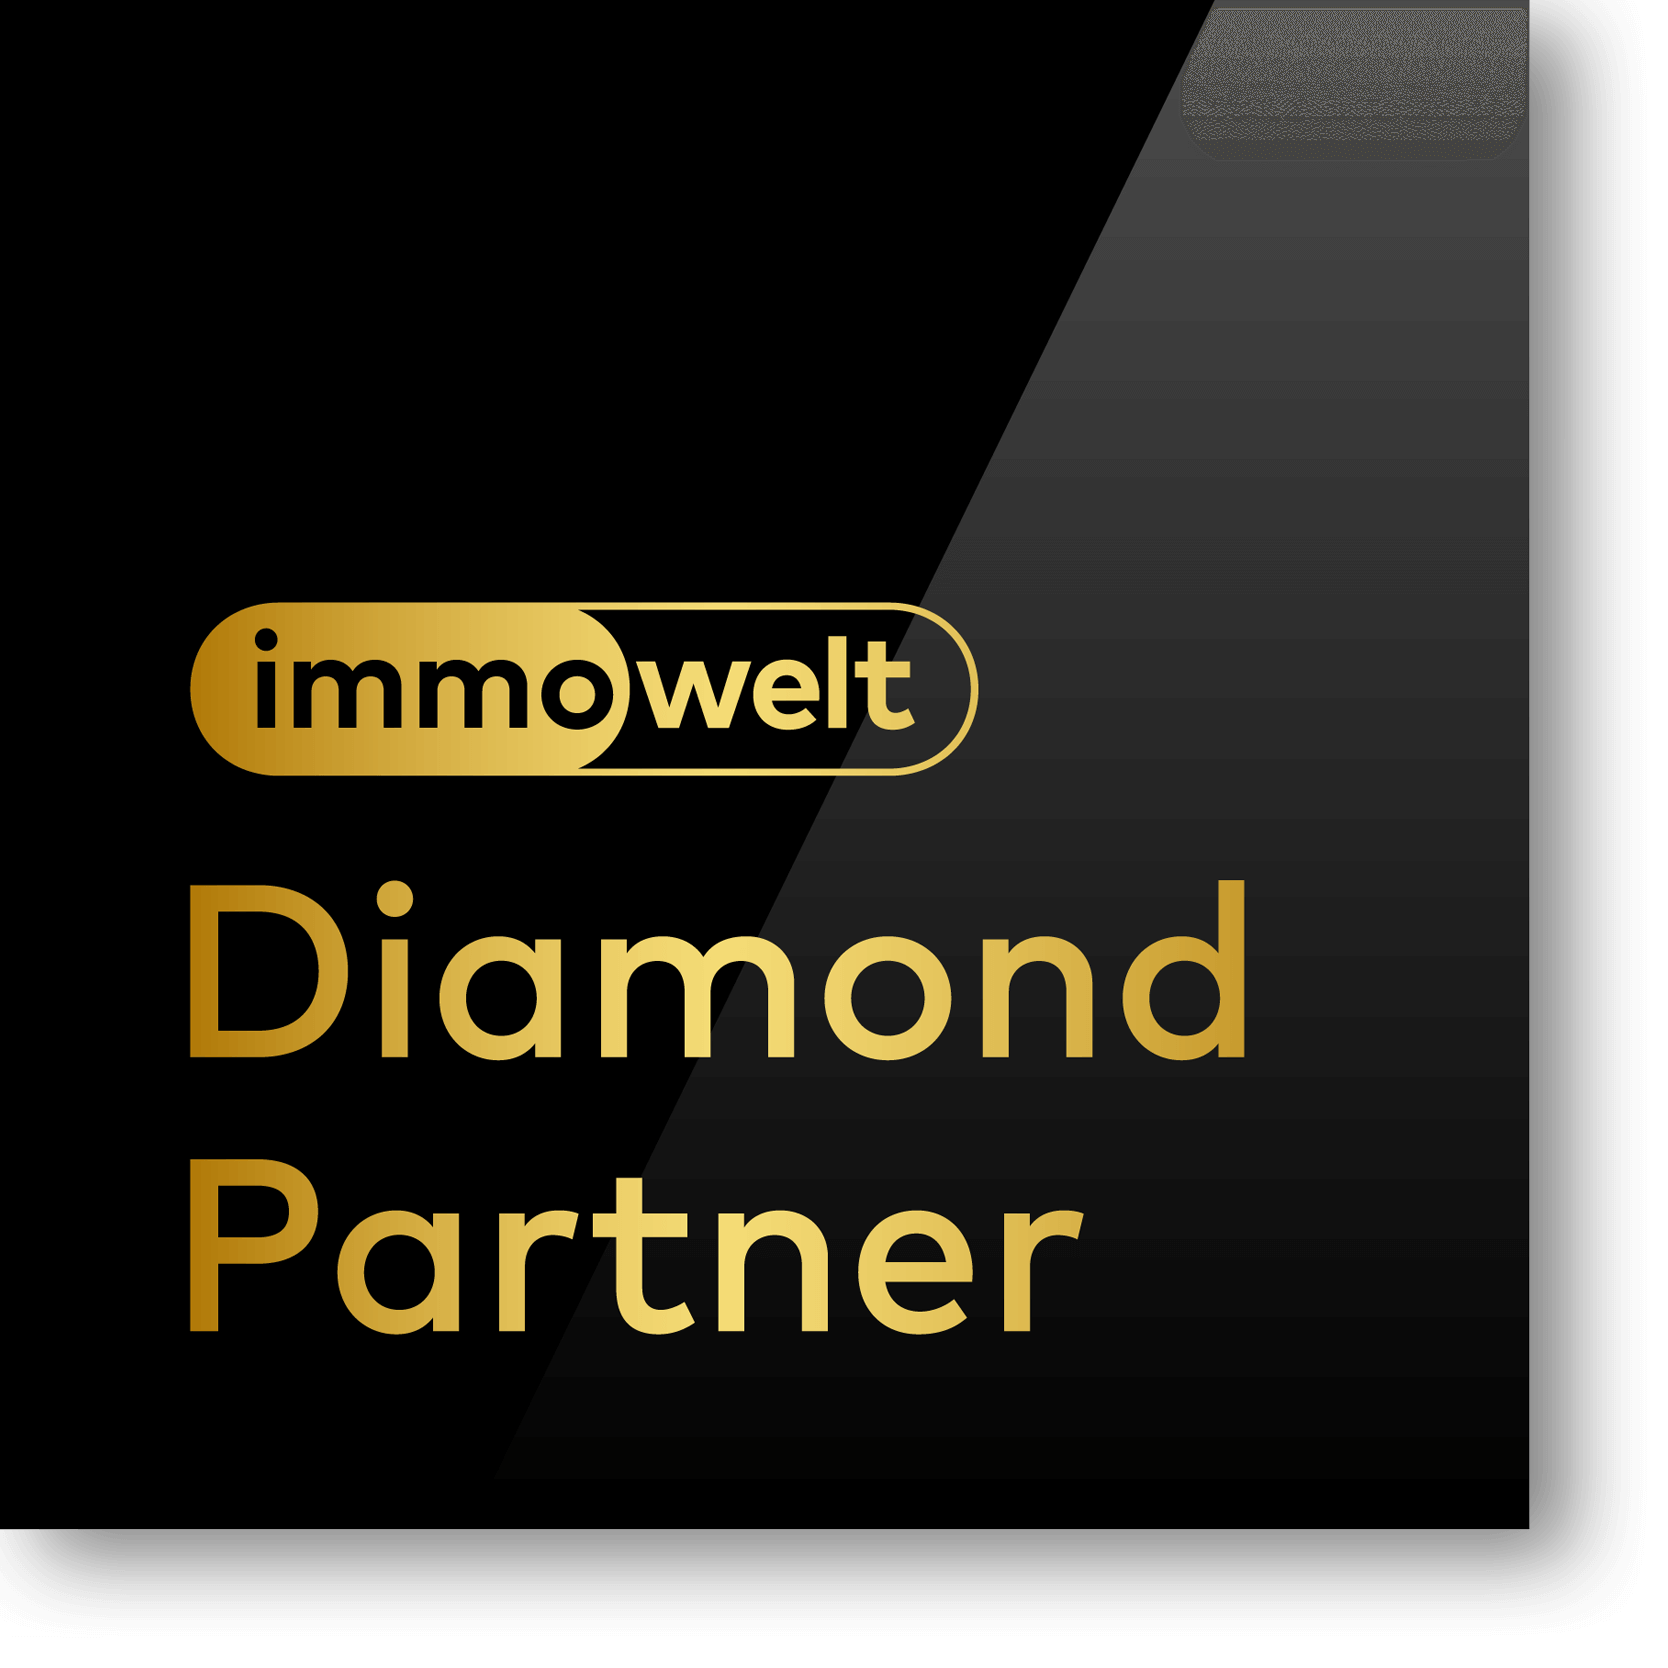 Wirtschaftsberatung & Immobilien in Berlin-Brandenburg Glase Vermittlungs-GmbH | Diamond Partner Immowelt